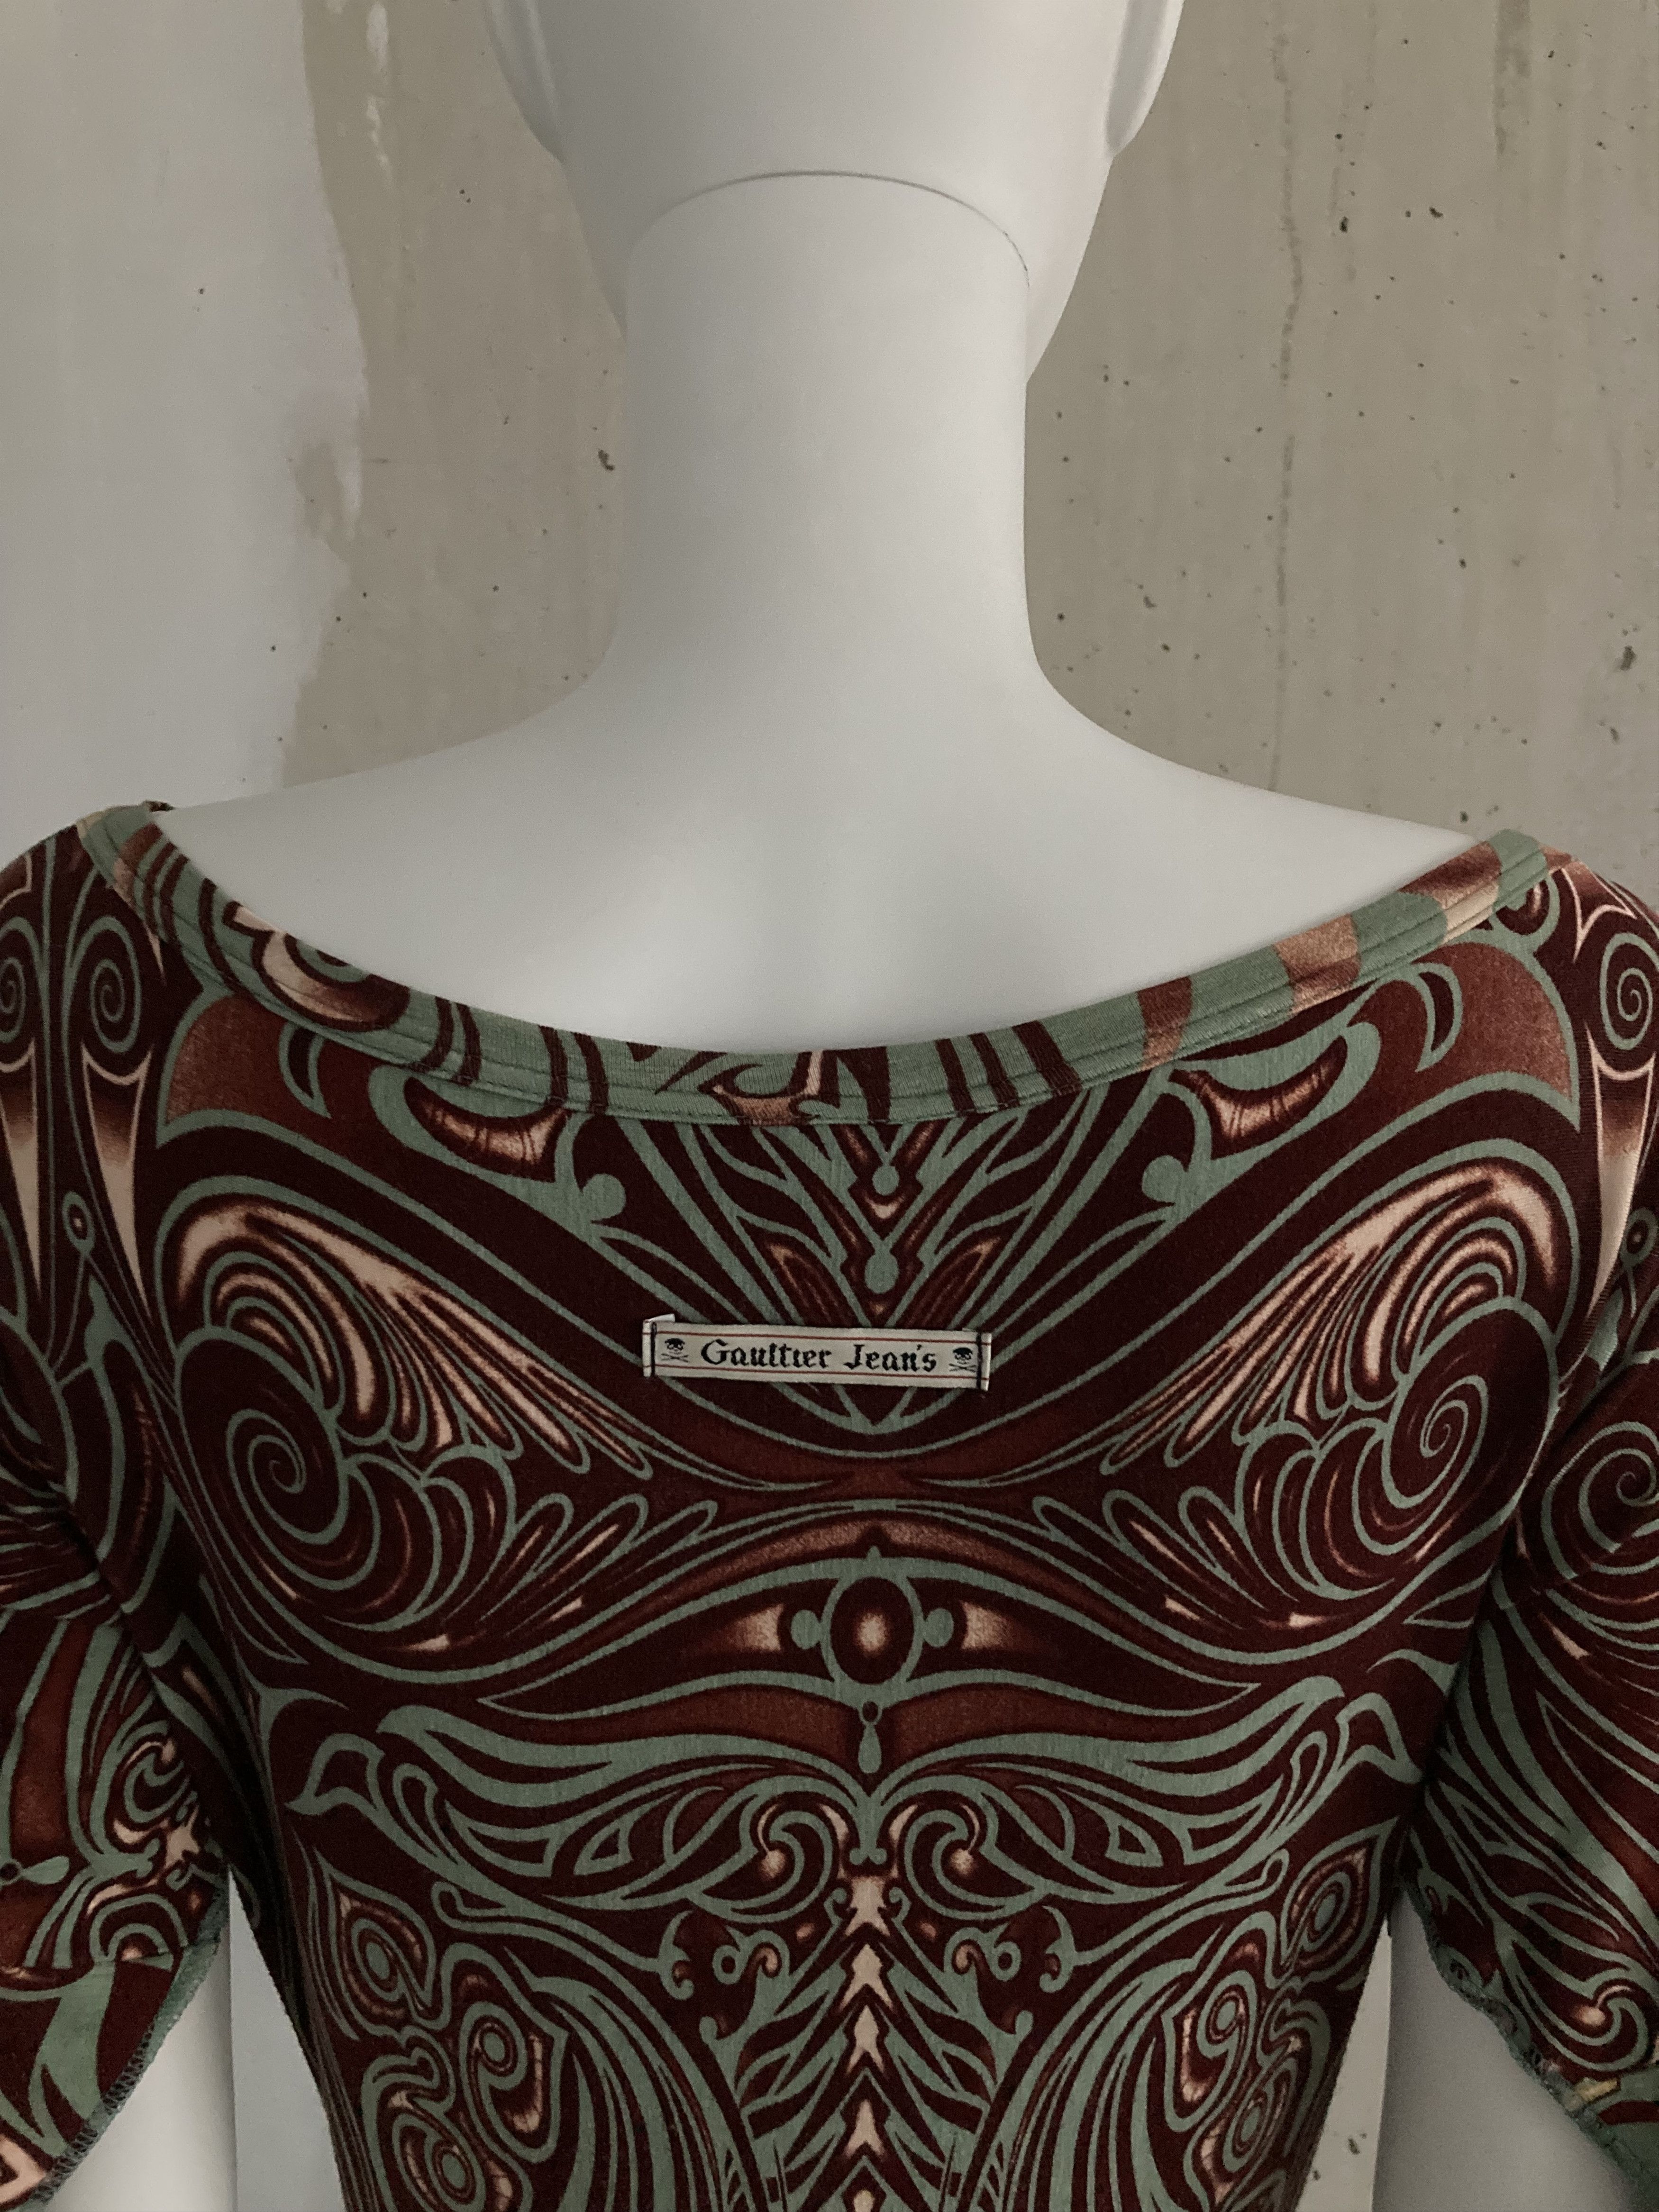 Jean Paul Gaultier Archive 1996 Cyberbaba Dress Size S / US 4 / IT 40 - 8 Thumbnail